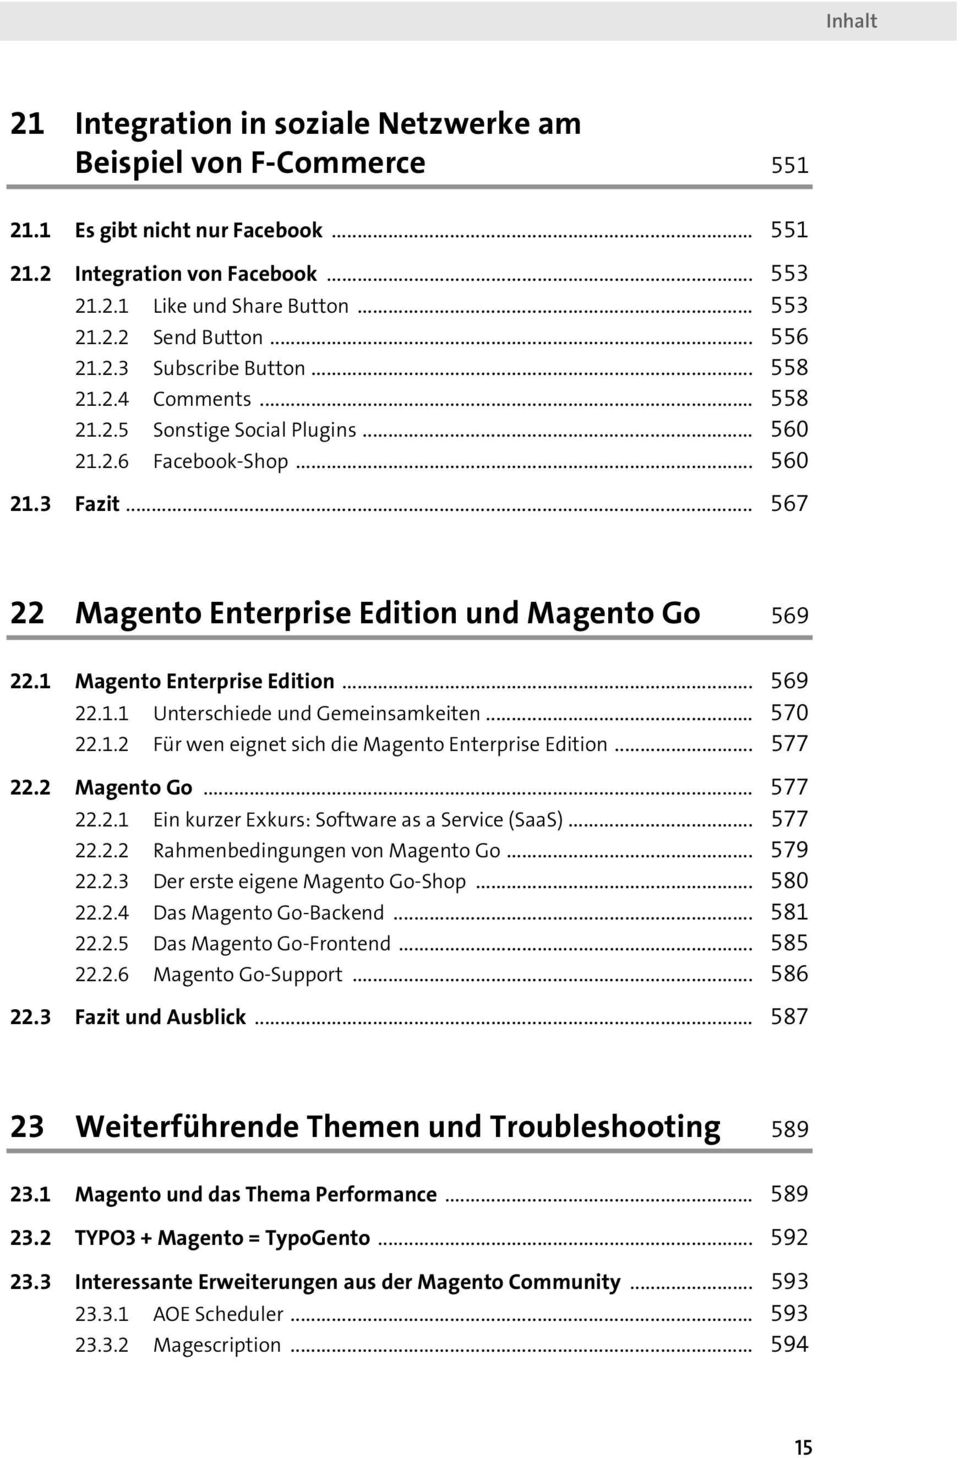 1 Magento Enterprise Edition... 569 22.1.1 Unterschiede und Gemeinsamkeiten... 570 22.1.2 Für wen eignet sich die Magento Enterprise Edition... 577 22.2 Magento Go... 577 22.2.1 Ein kurzer Exkurs: Software as a Service (SaaS).